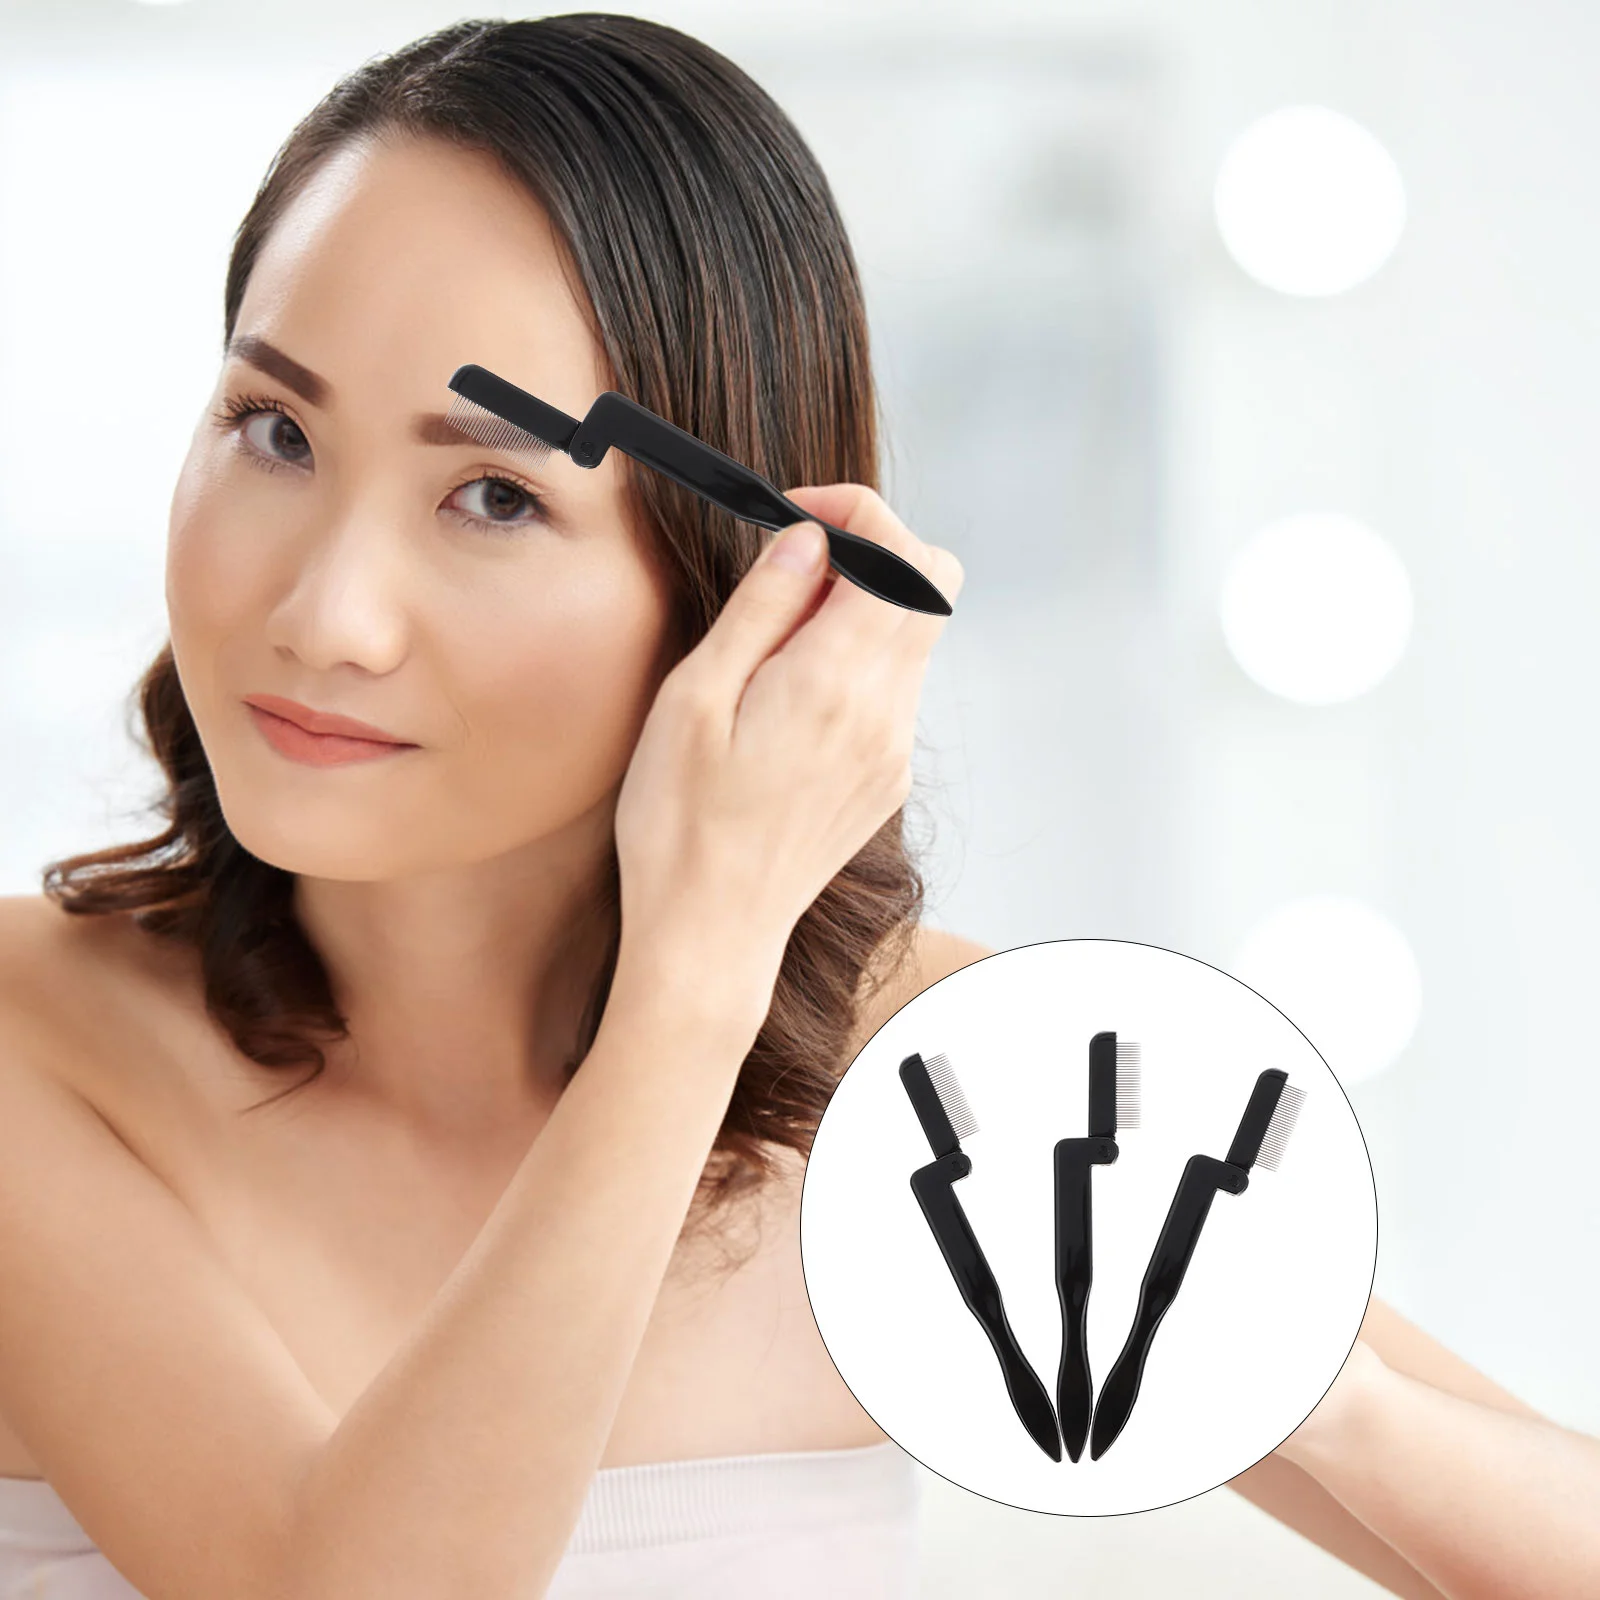 

Comb Eyelash Brush Eyebrow Lash Separator Makeup Brow Tool Extension Brushes Curler Curlers Mascara Portable Eye Repair Eyebrows